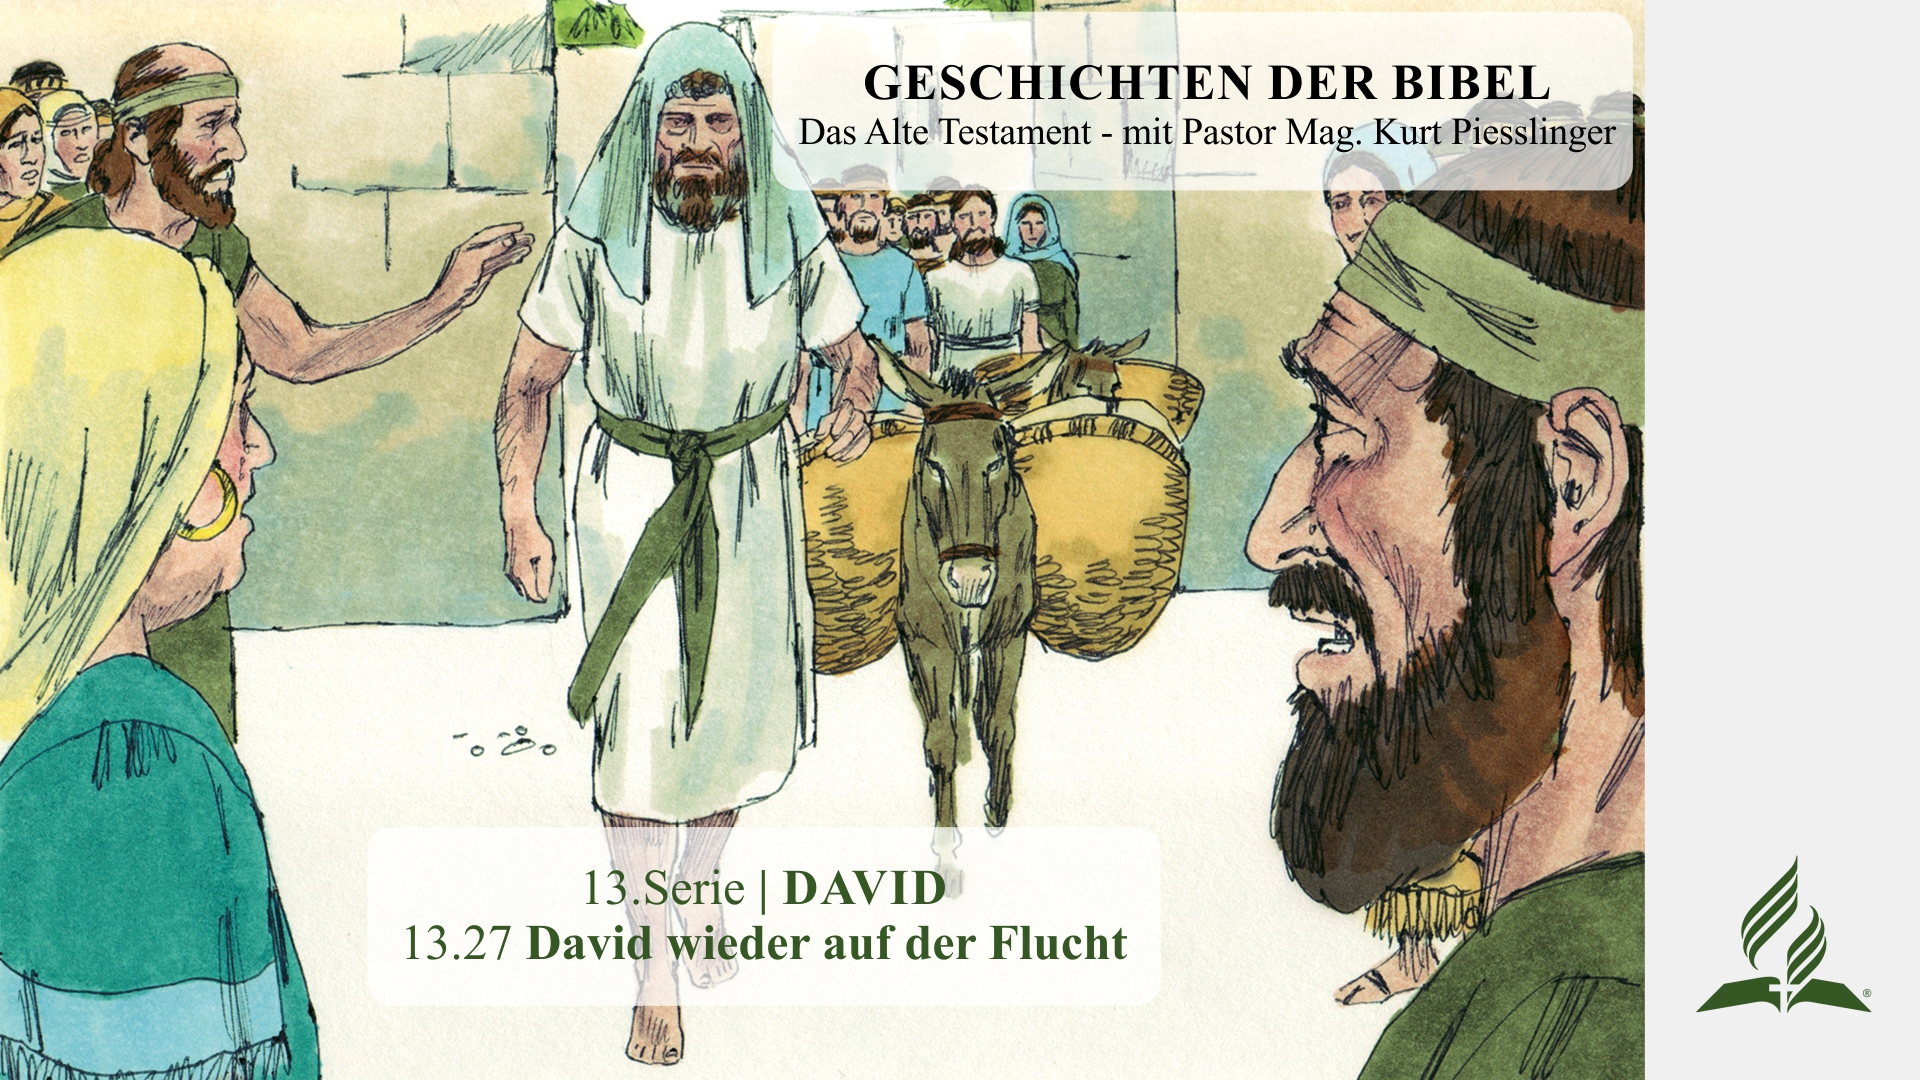 GESCHICHTEN DER BIBEL: 13.27 David wieder auf der Flucht – 13.DAVID | Pastor Mag. Kurt Piesslinger